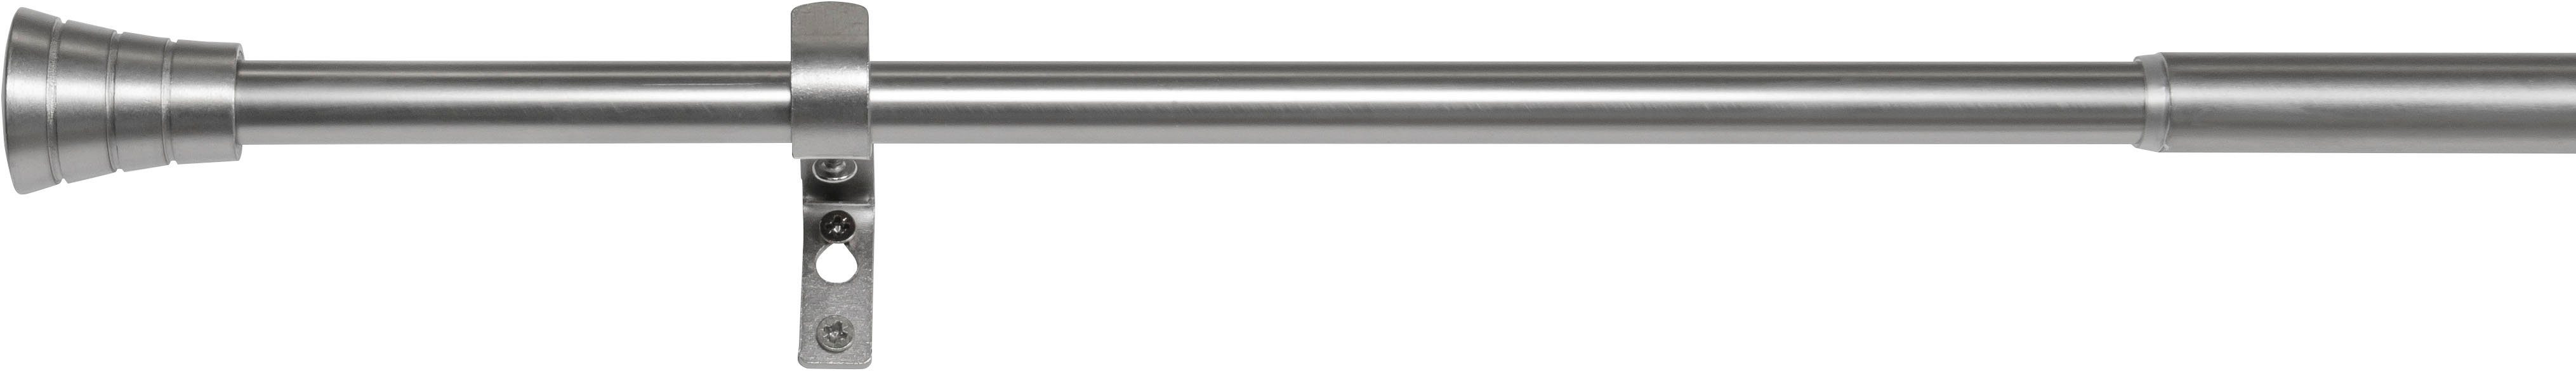 Gardinenstange habito-rillmino, mydeco, Ø 19 mm, 1-läufig, ausziehbar, verschraubt, Aluminium